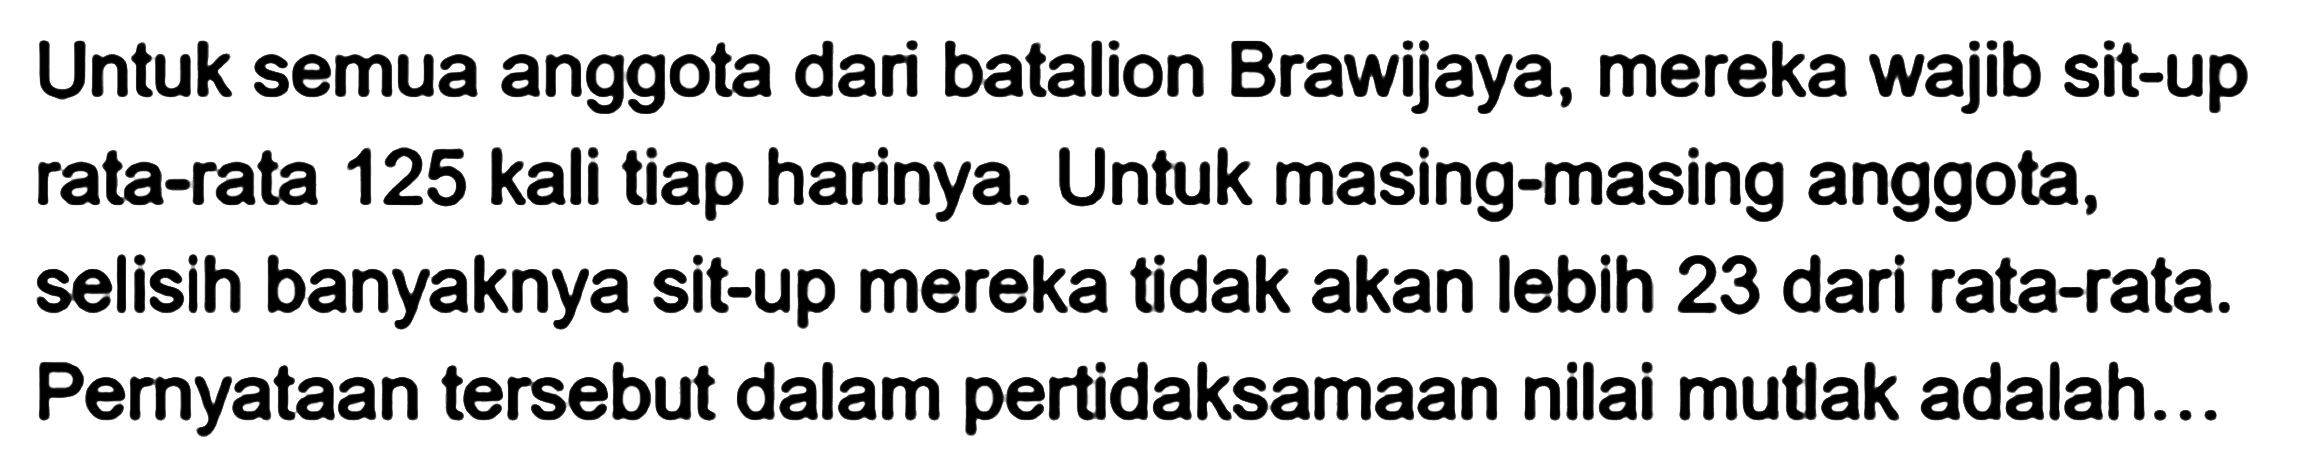 Untuk semua anggota dari batalion Brawijaya, mereka wajib sit-up rata-rata 125 kali tiap harinya. Untuk masing-masing anggota, selisih banyaknya sit-up mereka tidak akan lebih 23 dari rata-rata: Pernyataan tersebut dalam pertidaksamaan nilai mutlak adalah...